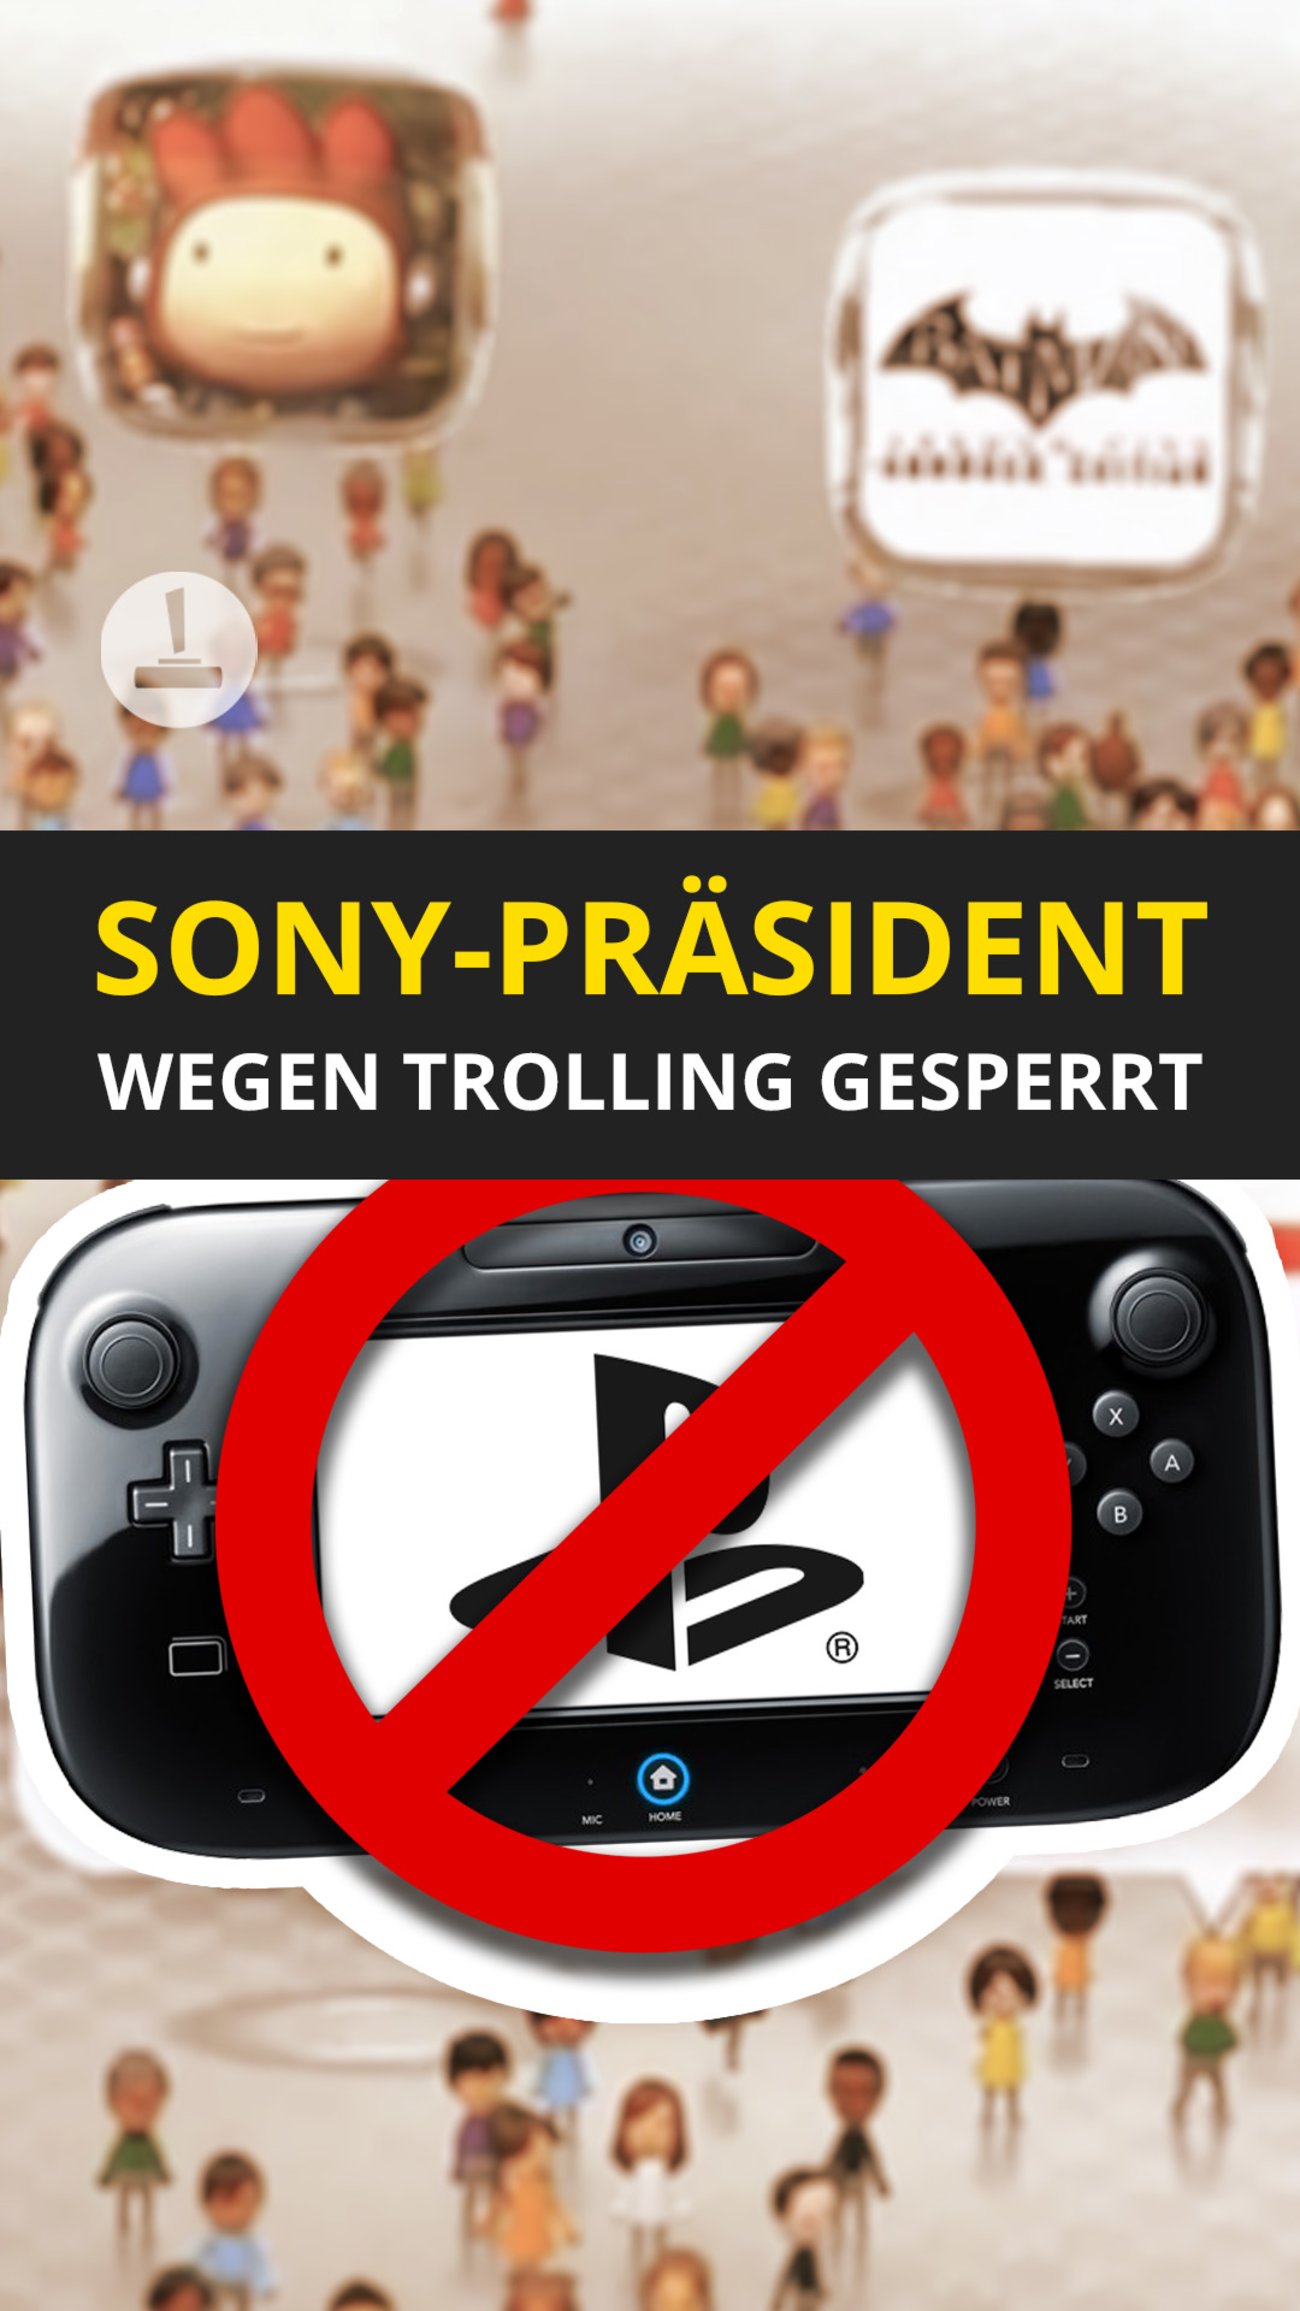 Sony-Präsident wegen Trolling gesperrt?!